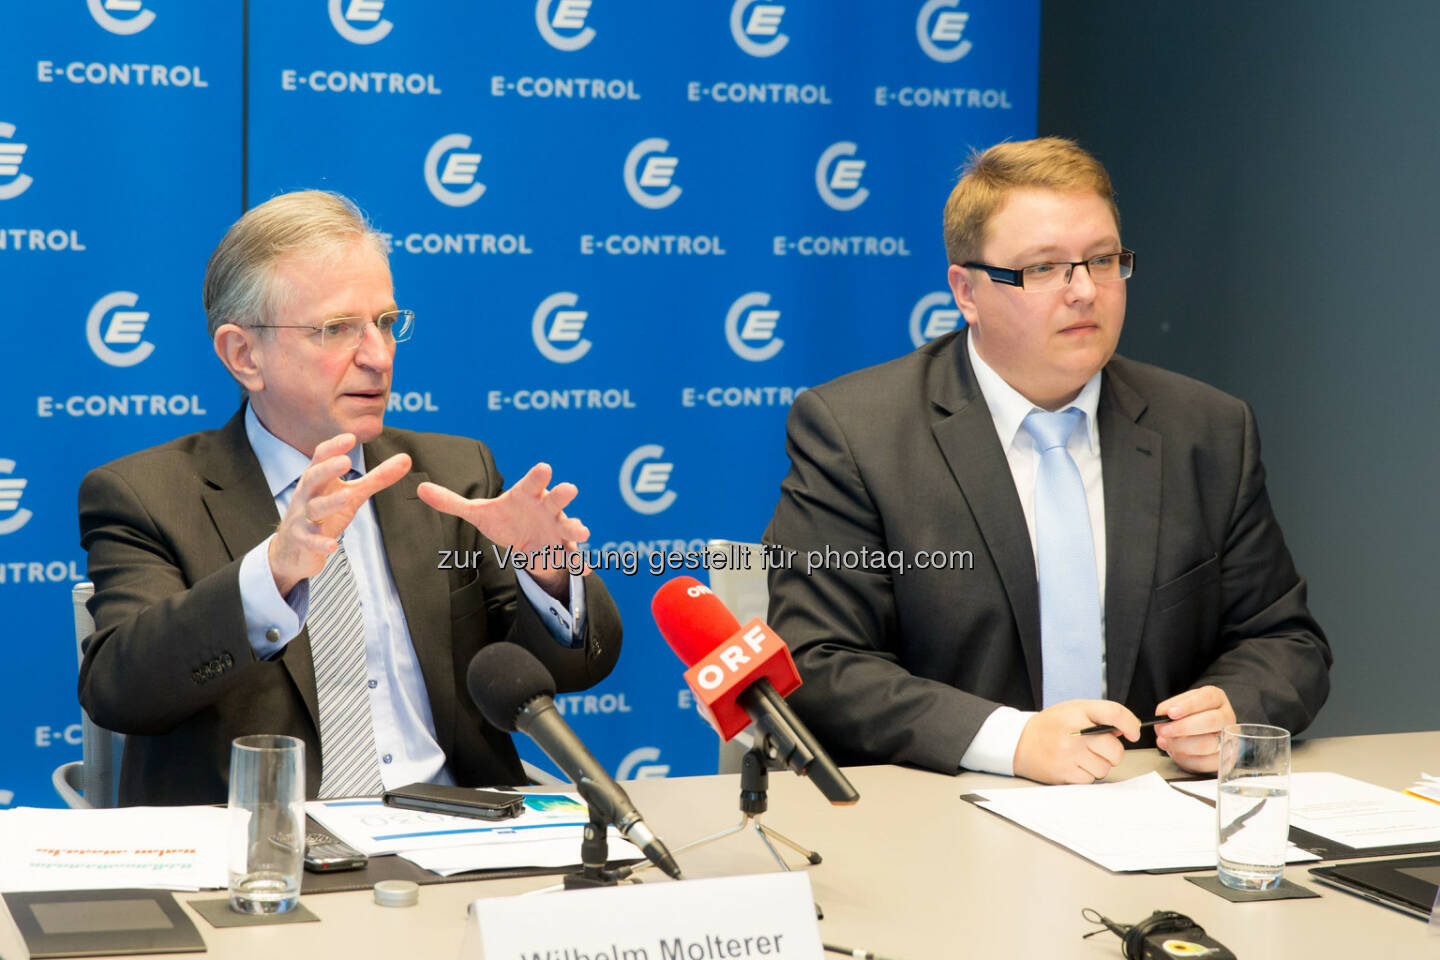 Wilhelm Molterer, Vizepraesident E-Control und Mitglied des Direktoriums der Europaeischen Investitionsbank, Martin Graf, Vorstand der Energie-Control Austria